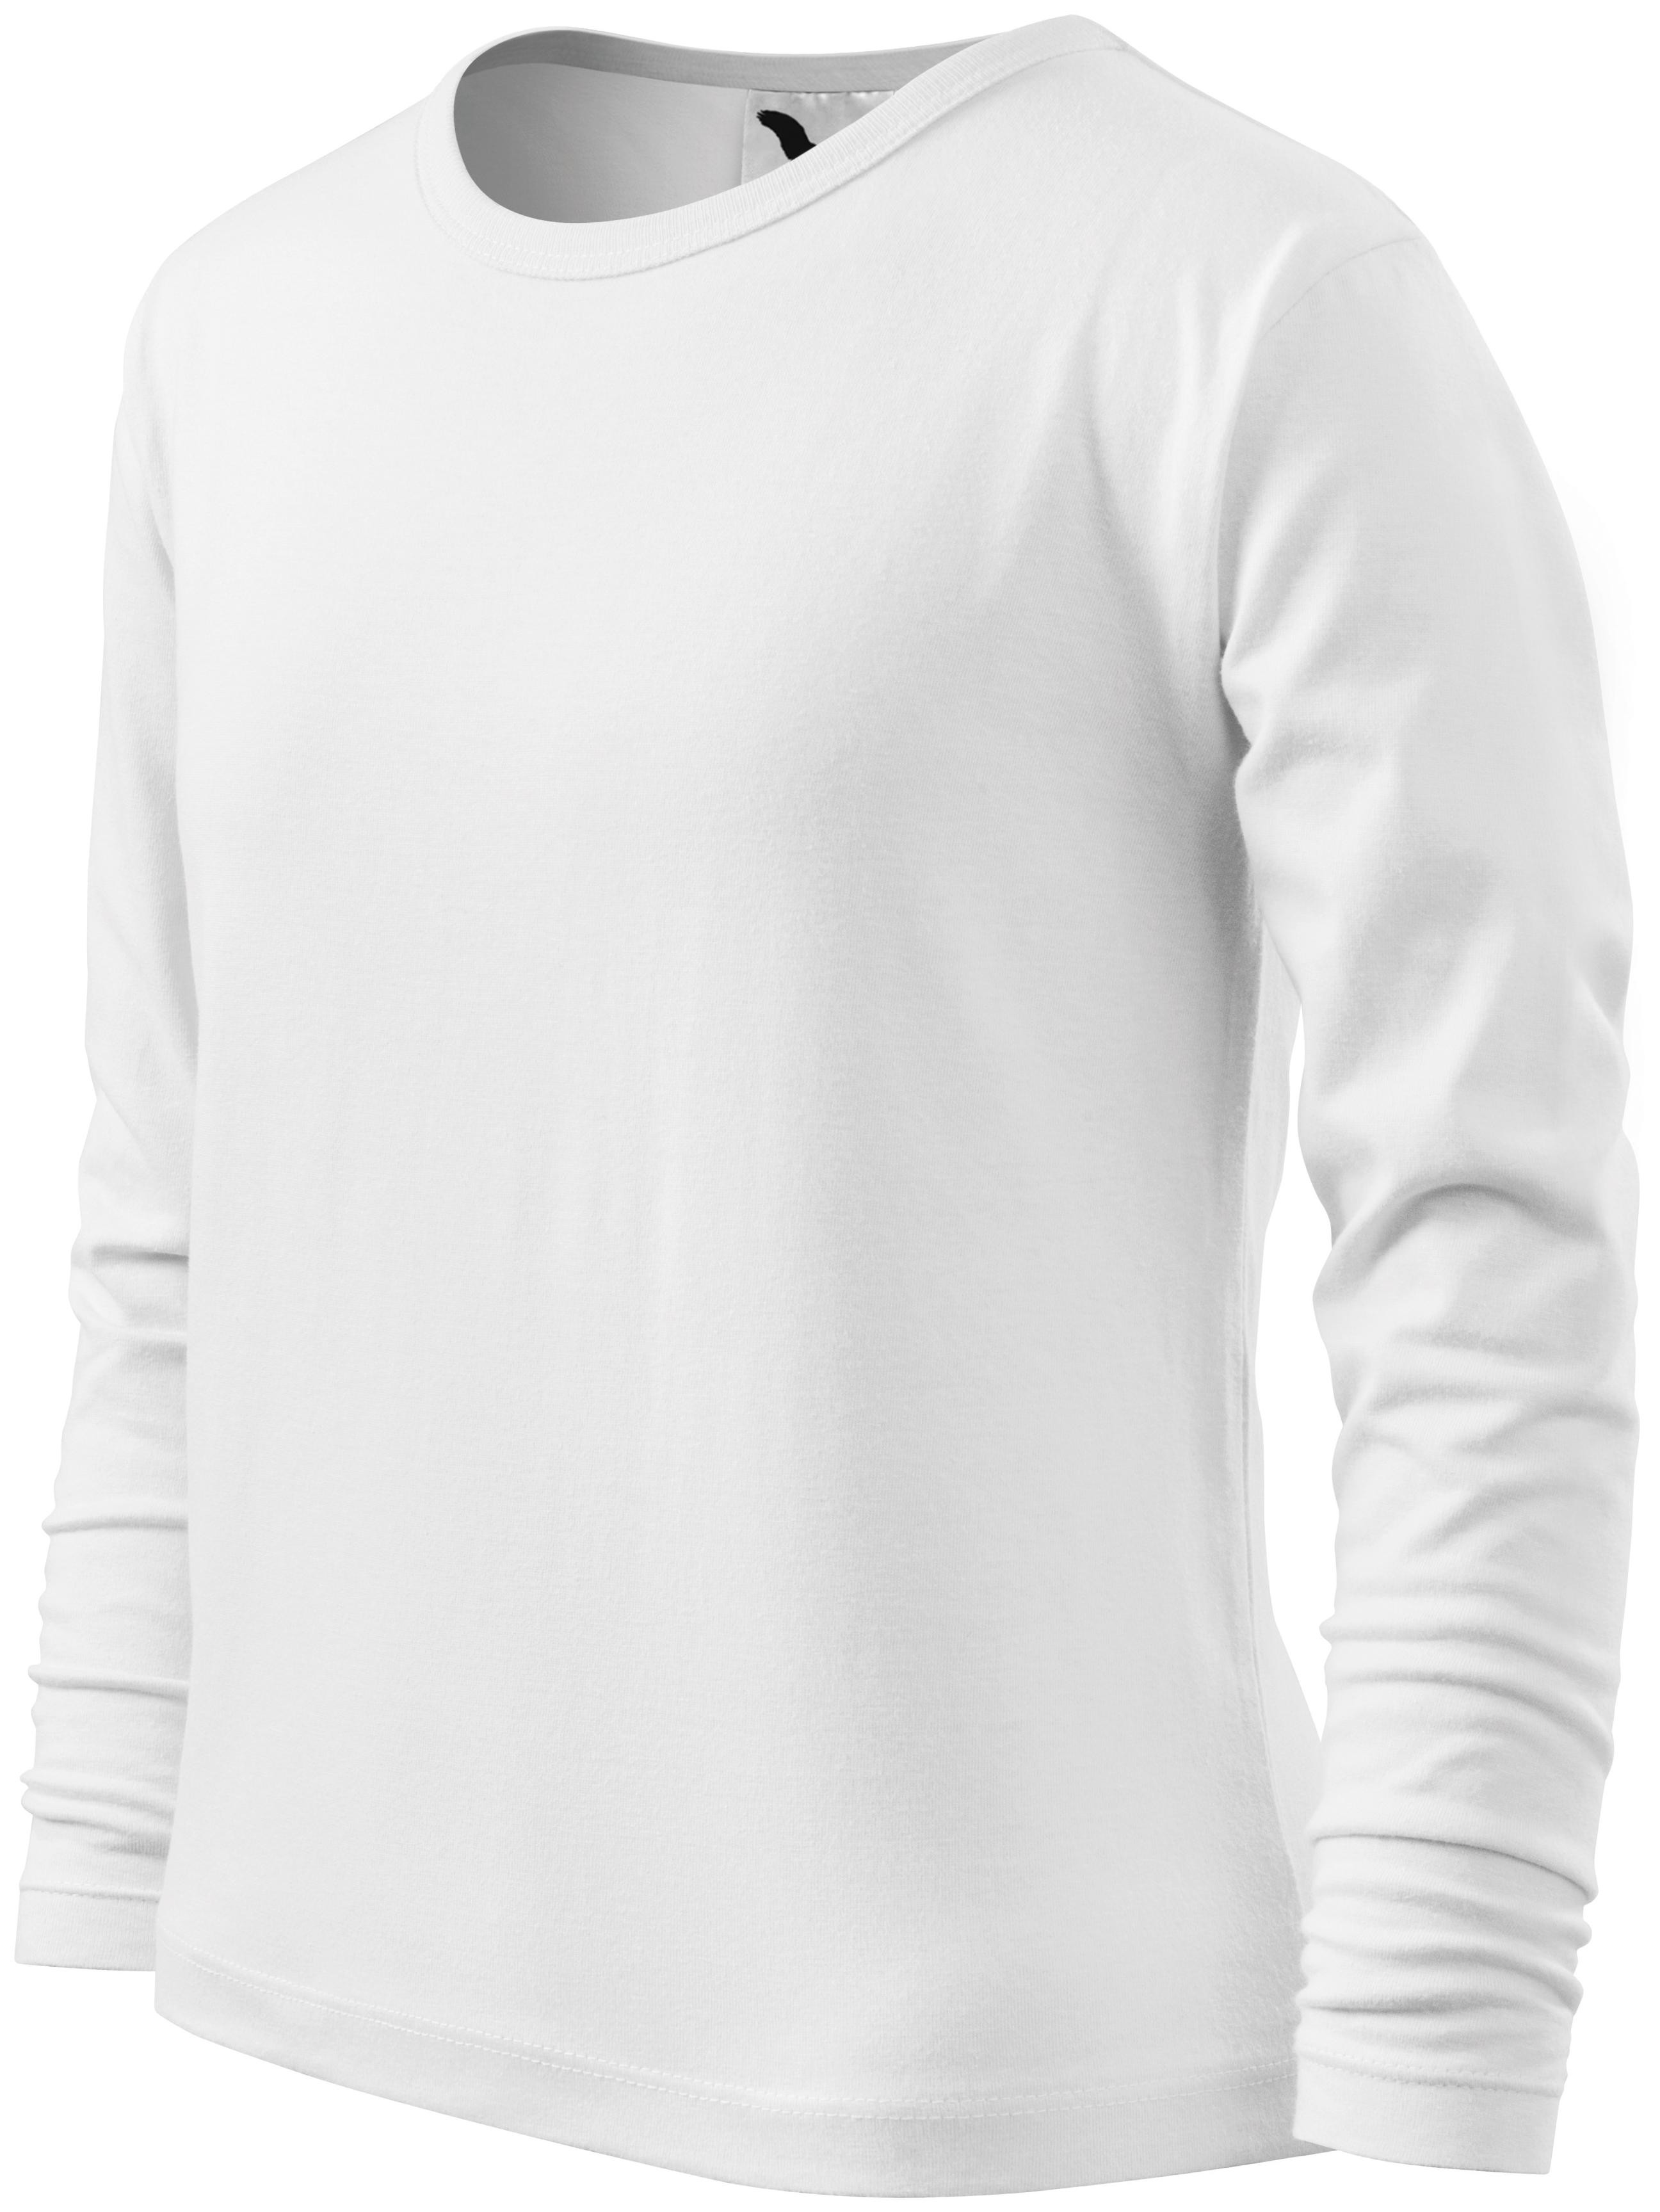 Detské tričko s dlhým rukávom, biela, 134cm / 8rokov